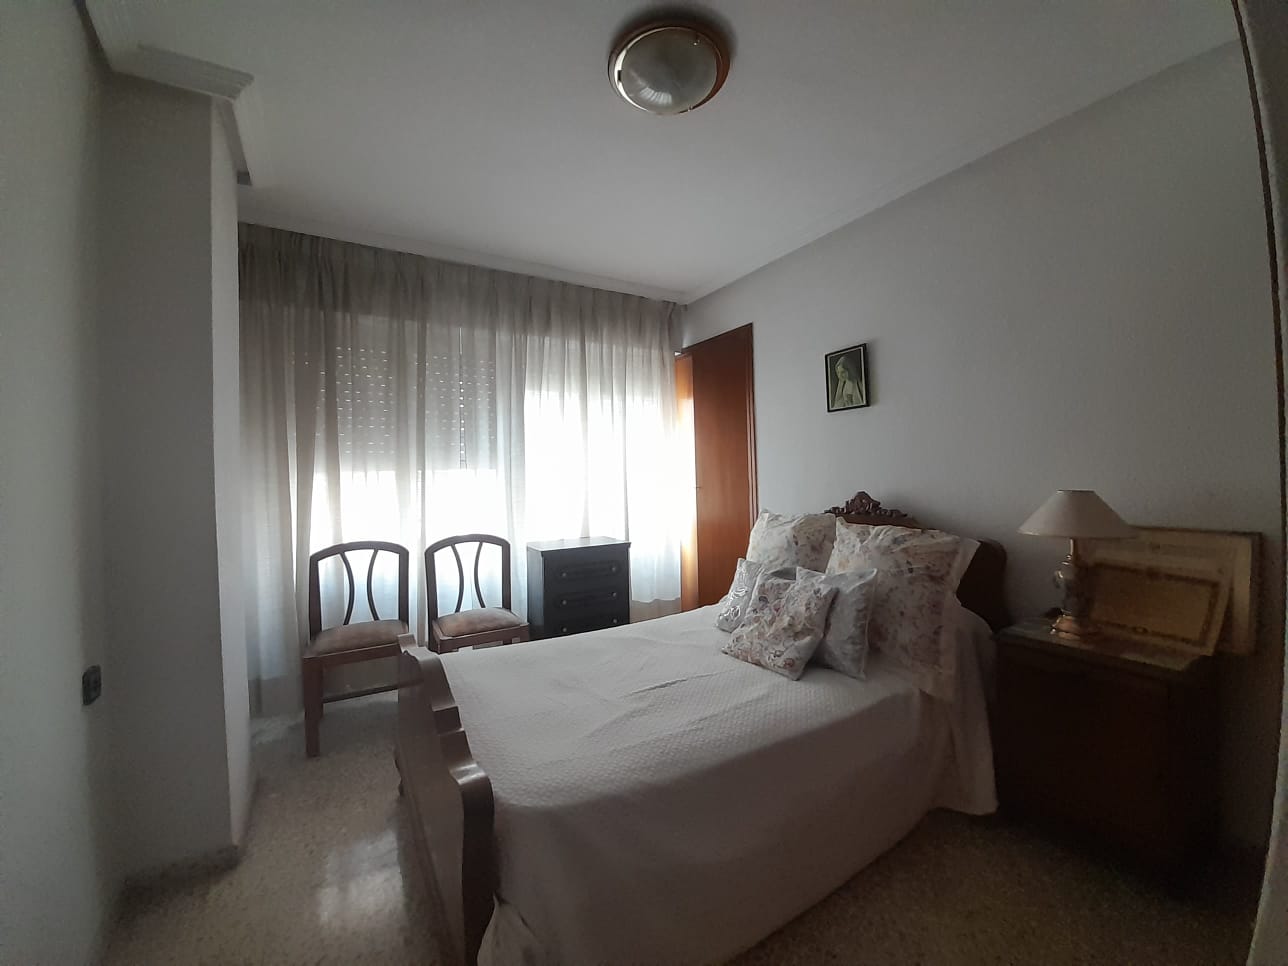 Home Staging Casamayor en habitación de vivienda Alicante